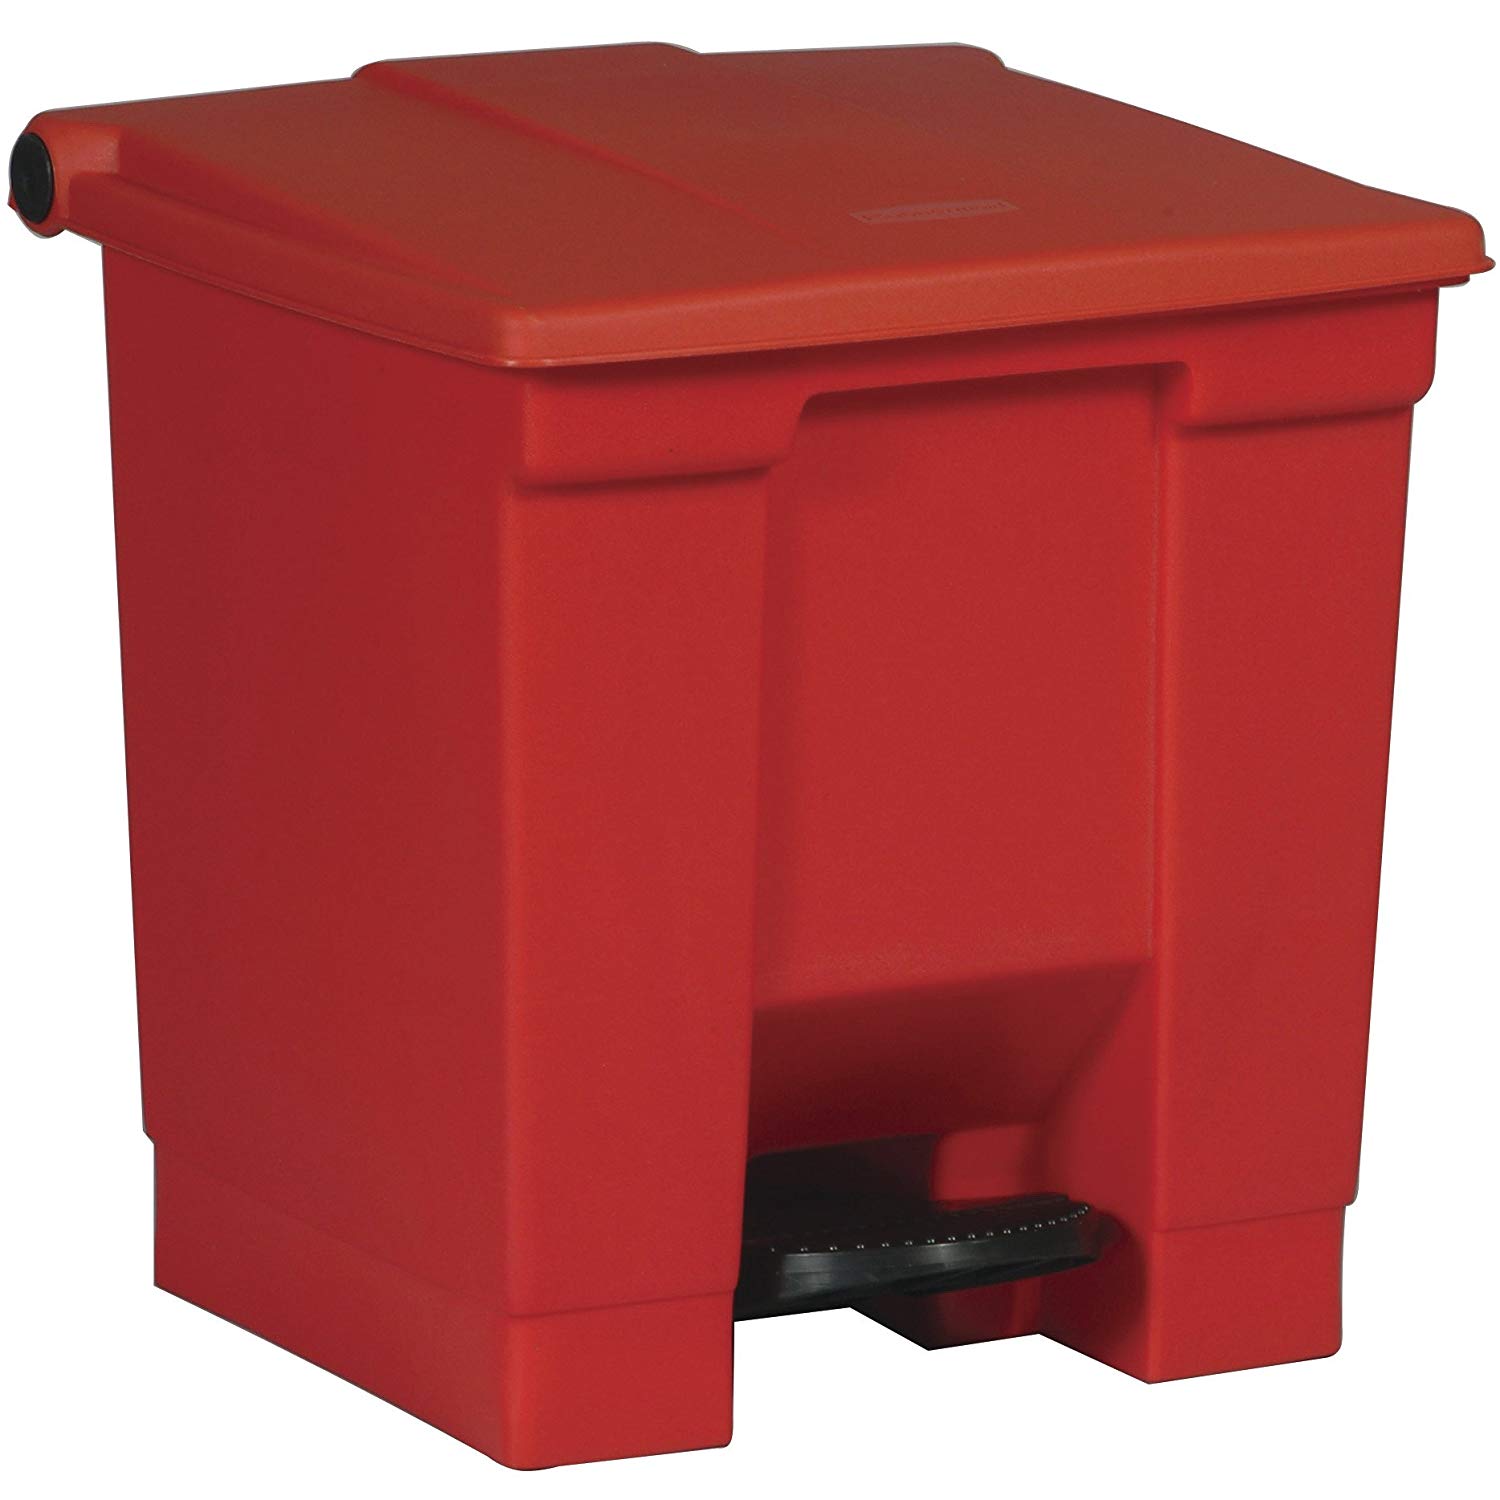 ถังขยะแบบเท้าเหยียบ Legacy Step-On Container ขนาด 30 ลิตร สีแดง